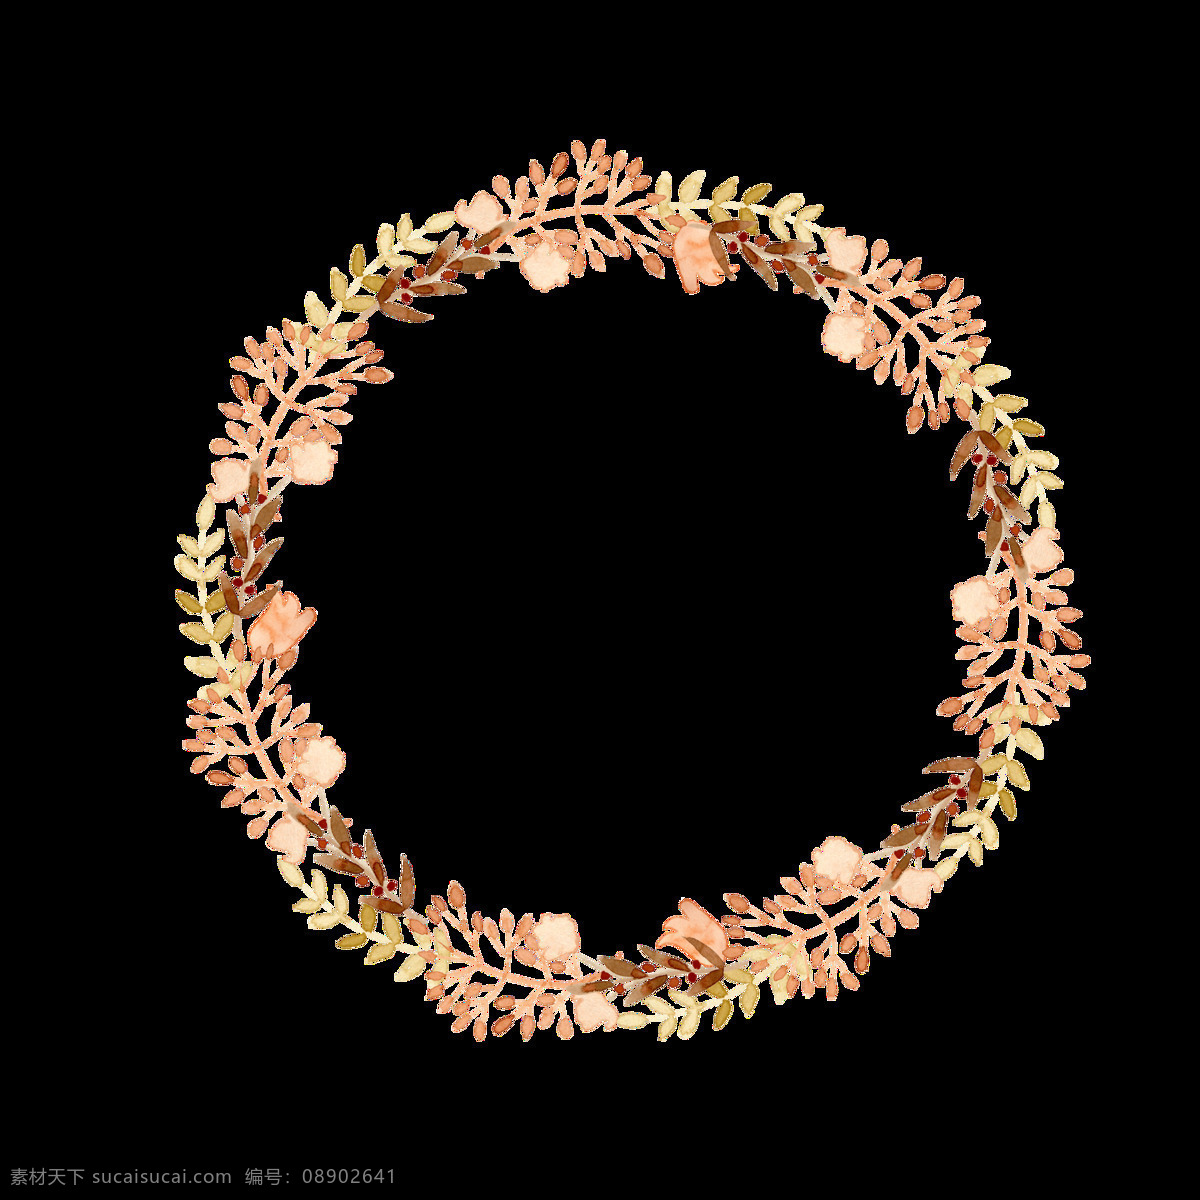 手绘 小 清新 秋天 叶子 花圈 透明 淡橘色 棕色 小叶子 舒服 透明素材 免扣素材 装饰图片